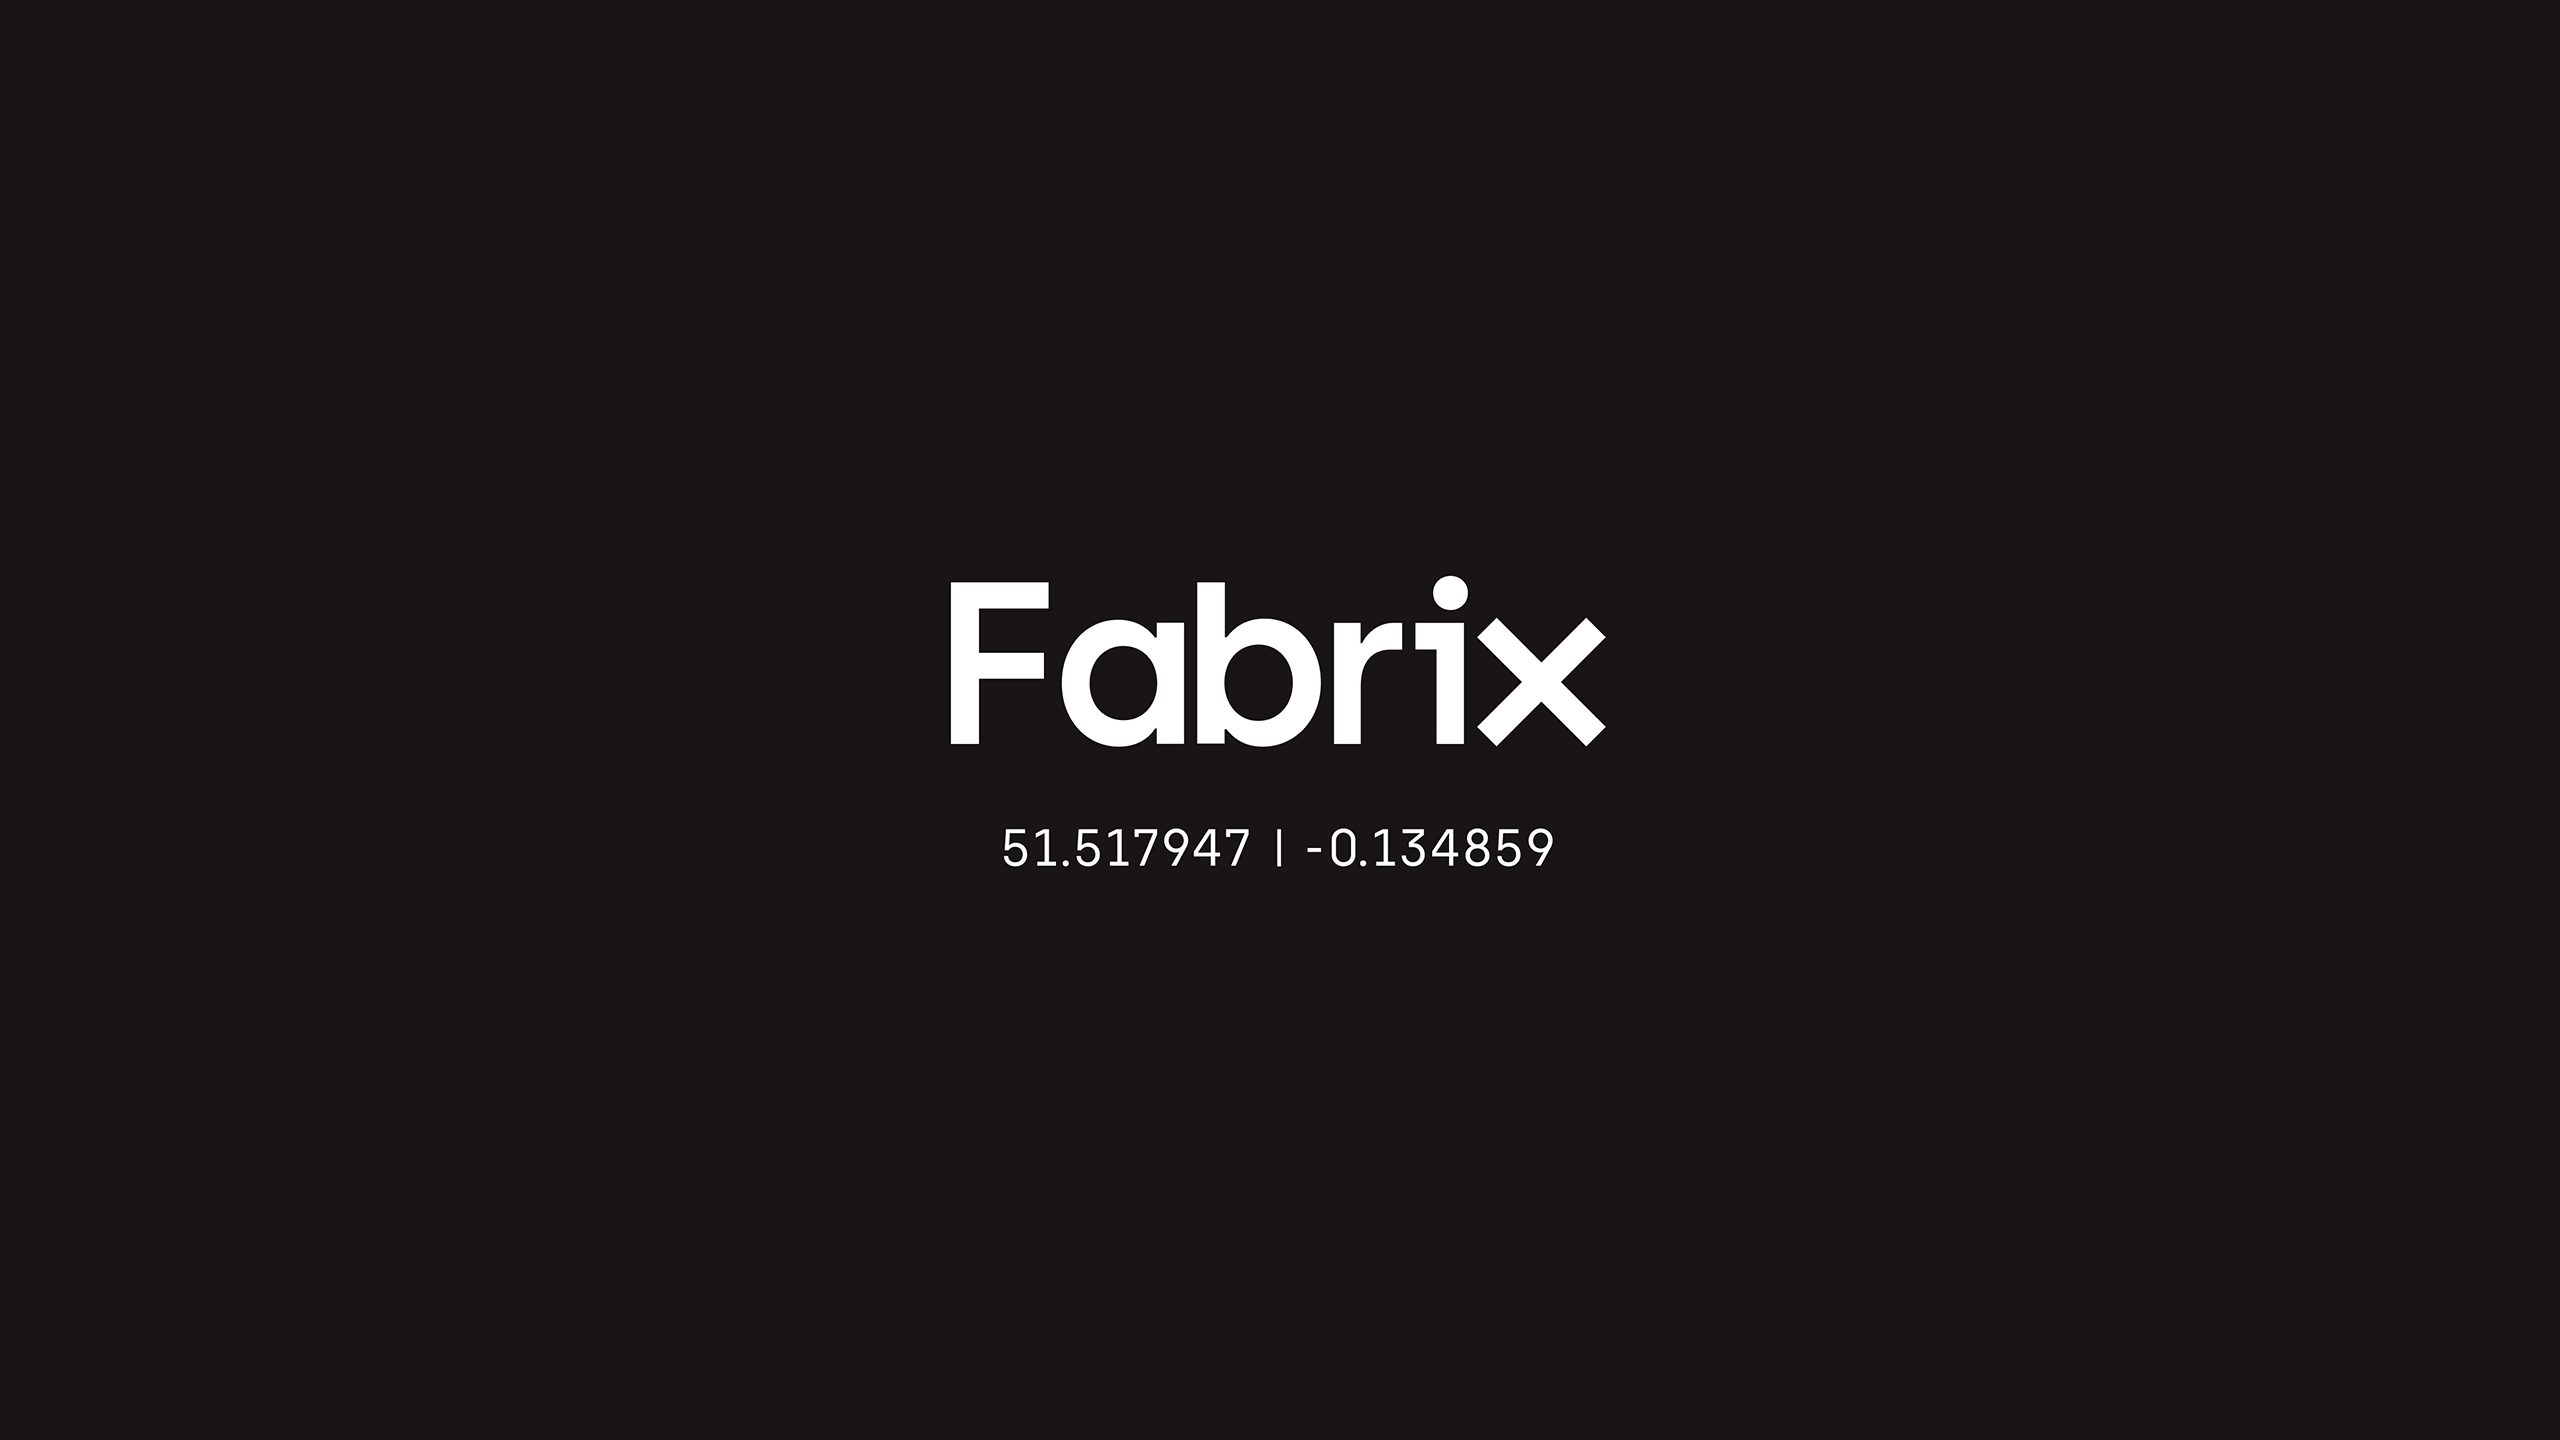 01-fabrix-social